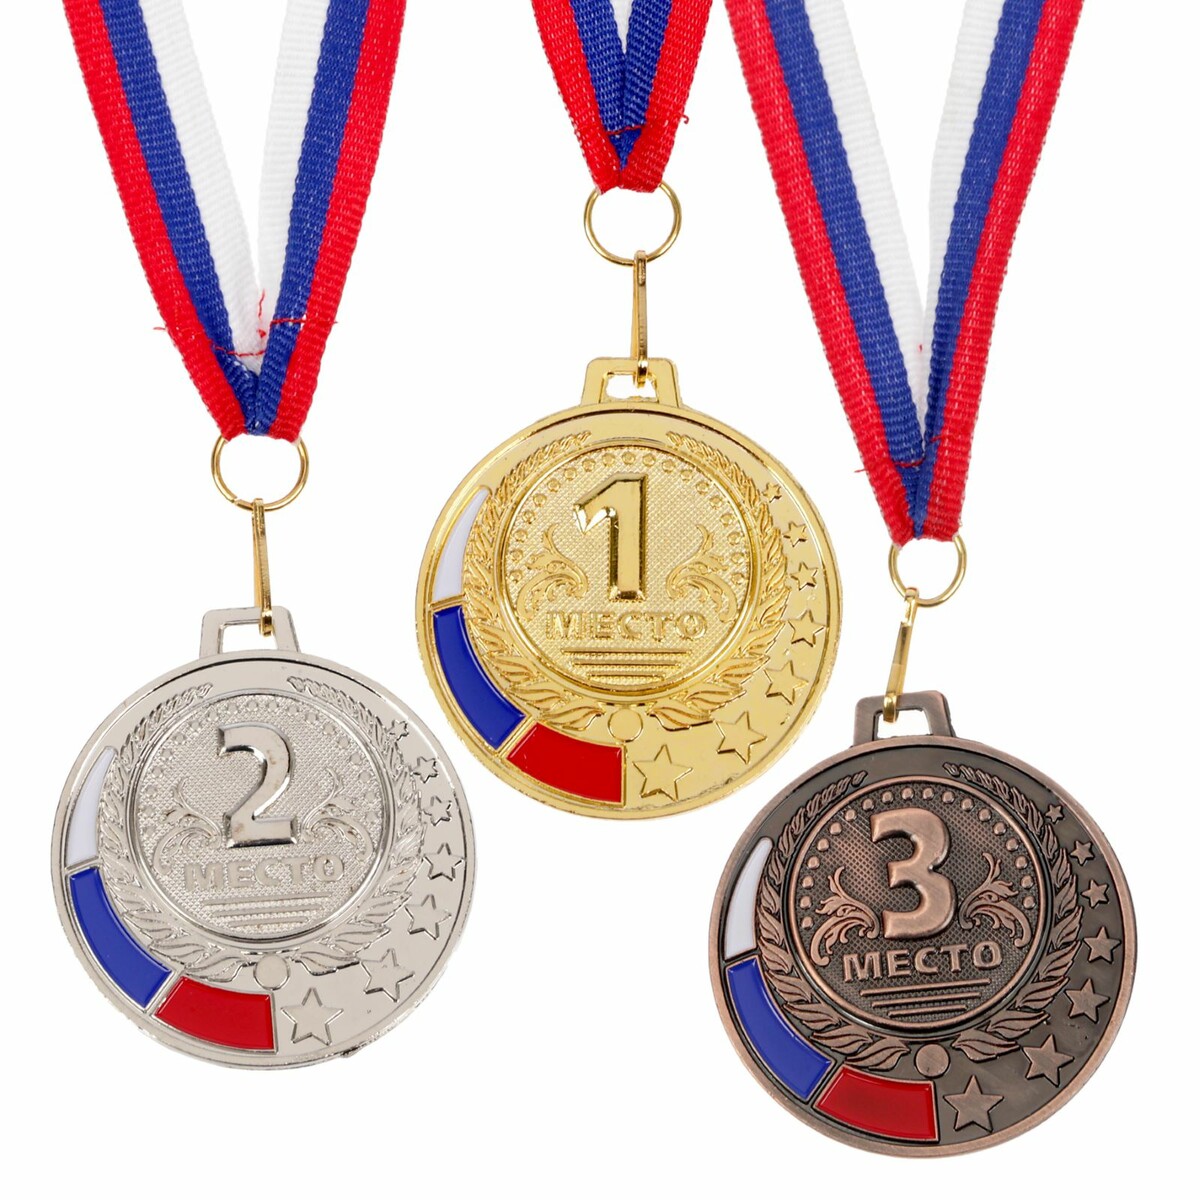 Медали награды купить. Медали спортивные. Медали наградные спортивные. Медаль за спортивные достижения. Медали для детей спортивные.